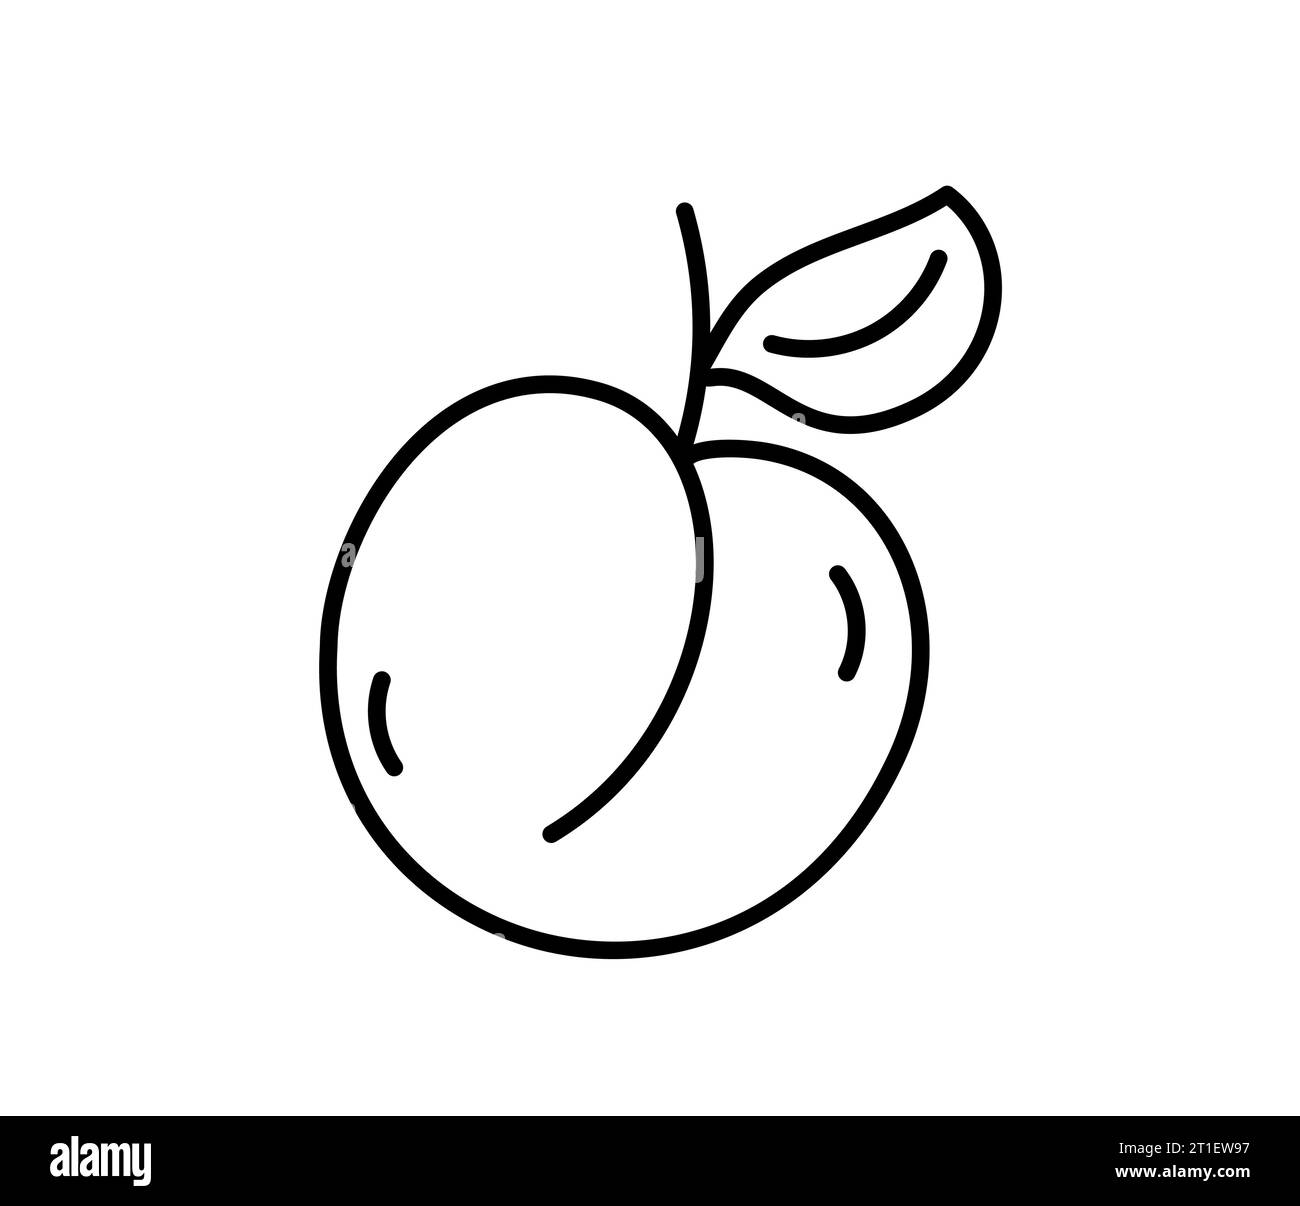 Pêche de ligne dessinée à la main, illustration de vecteur d'icône de contour de fruit d'abricot, convient pour le livre de coloriage, logo, illustration, autocollant, couverture. Illustration de Vecteur